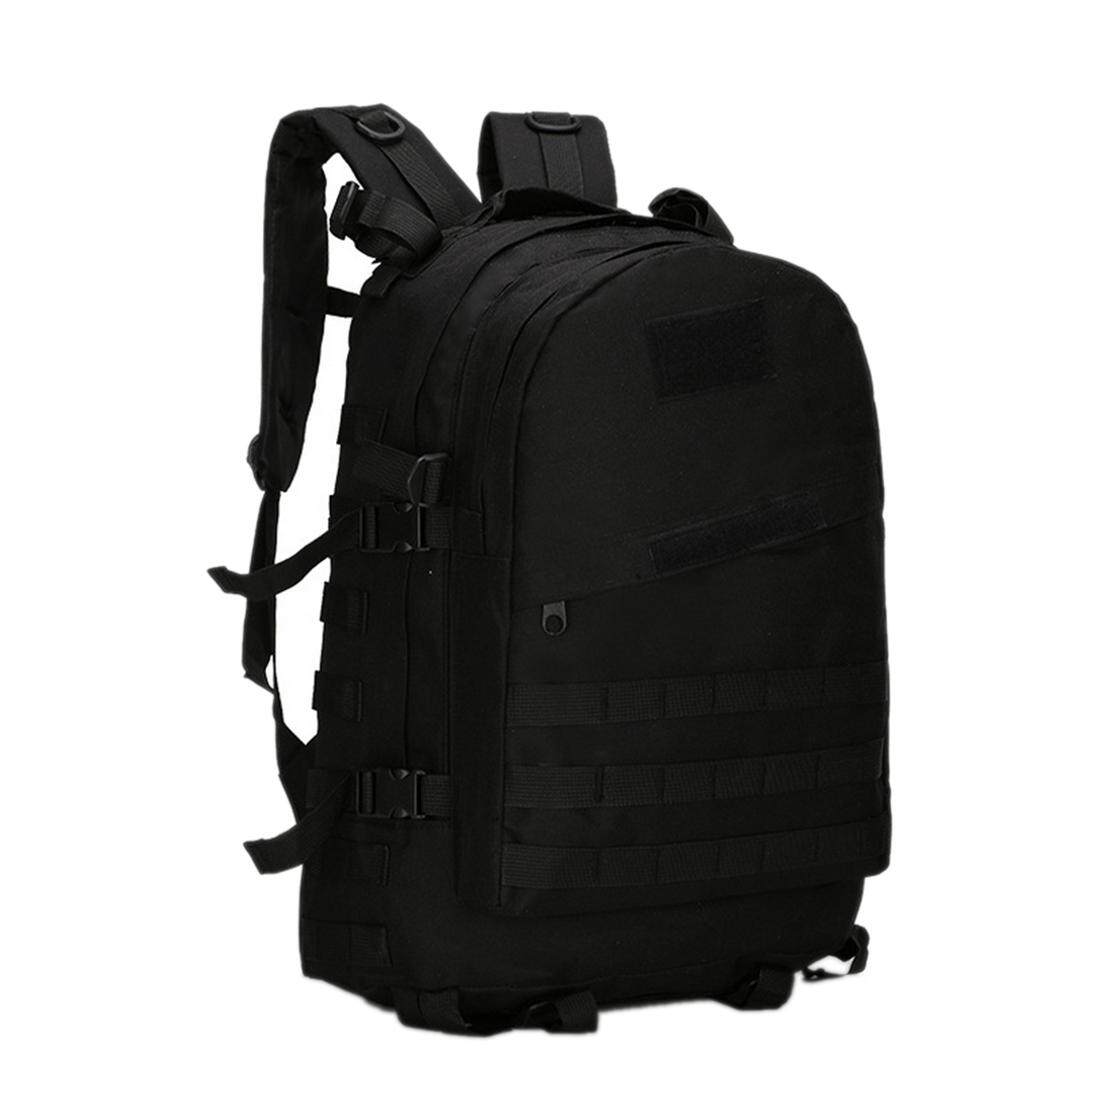 360DSC 3D 40ลิตรกลางแจ้งทหารทางยุทธวิธีการแคมป์เดินป่าเดินป่าสะพายเป้กระเป๋าเป้กระเป๋าแถบไนลอน-สีดำ